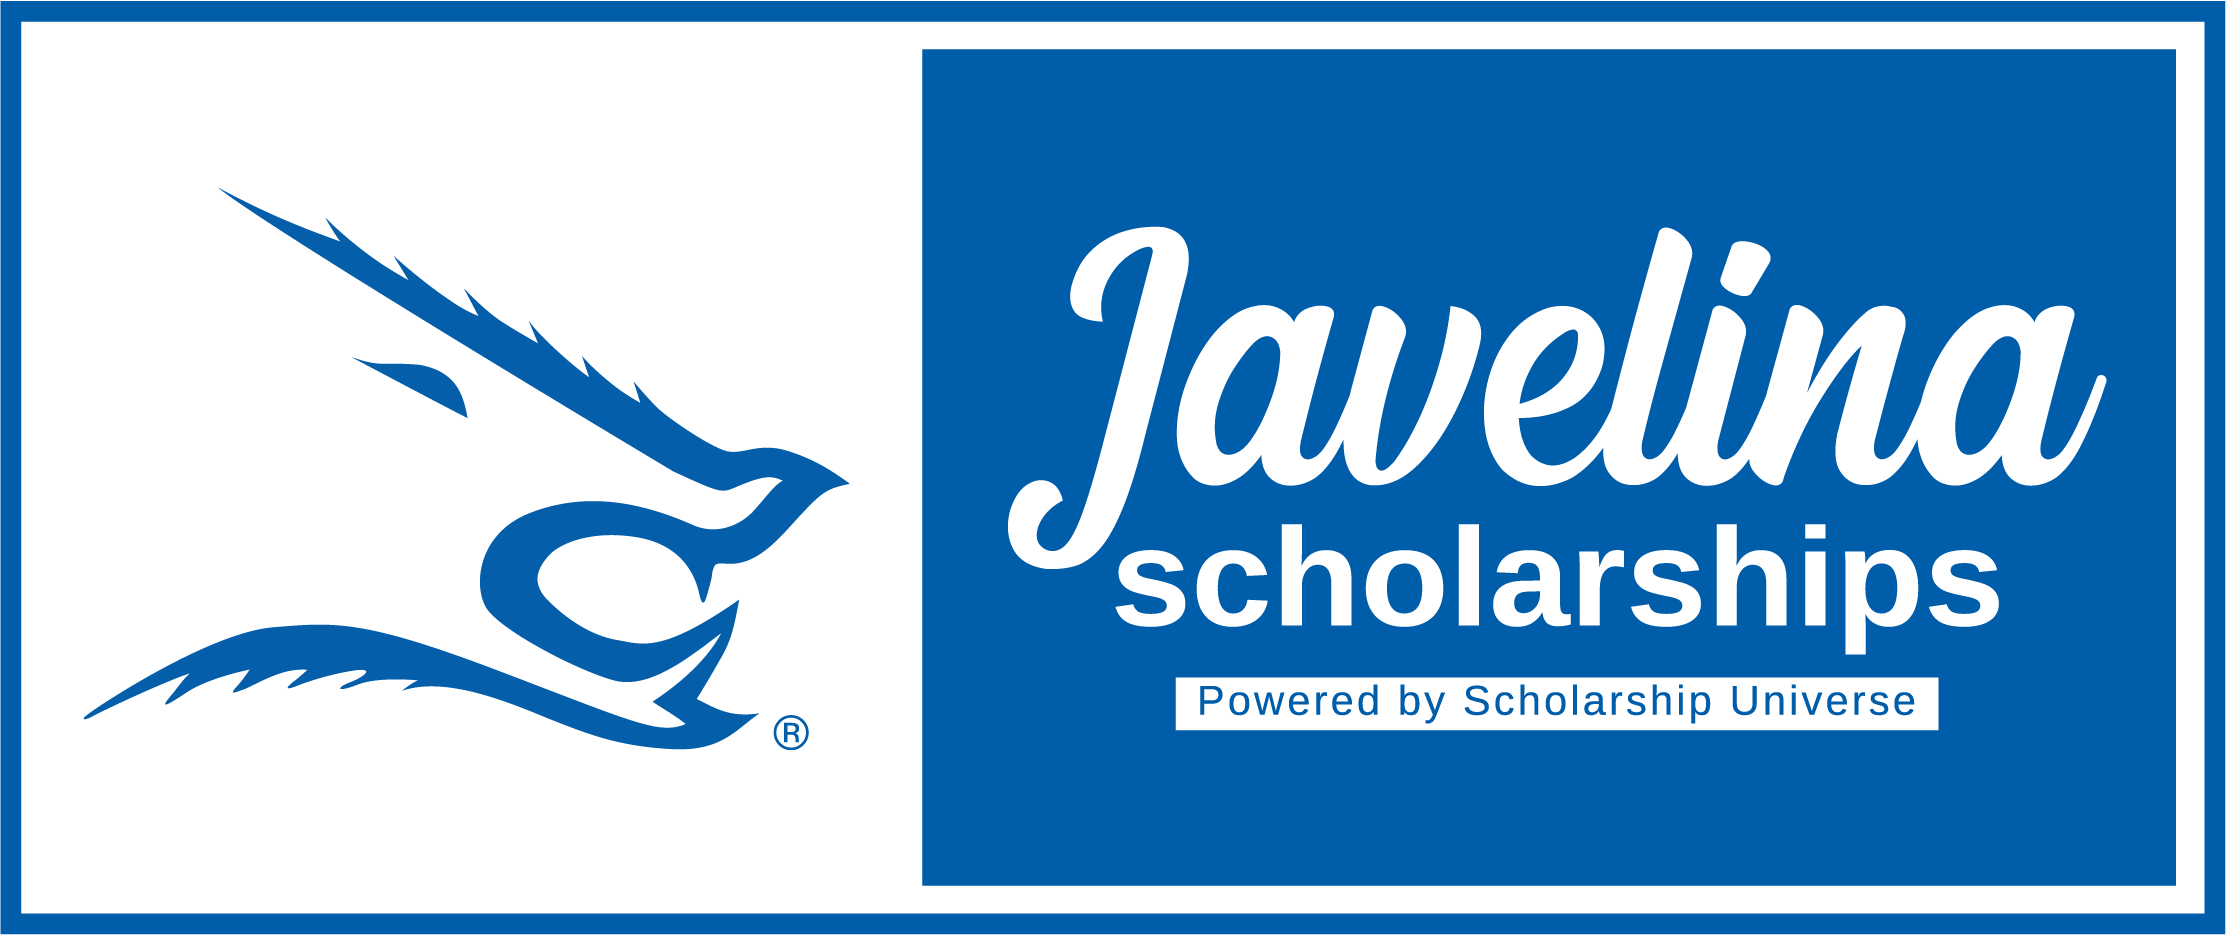 Javelina scholarship logo